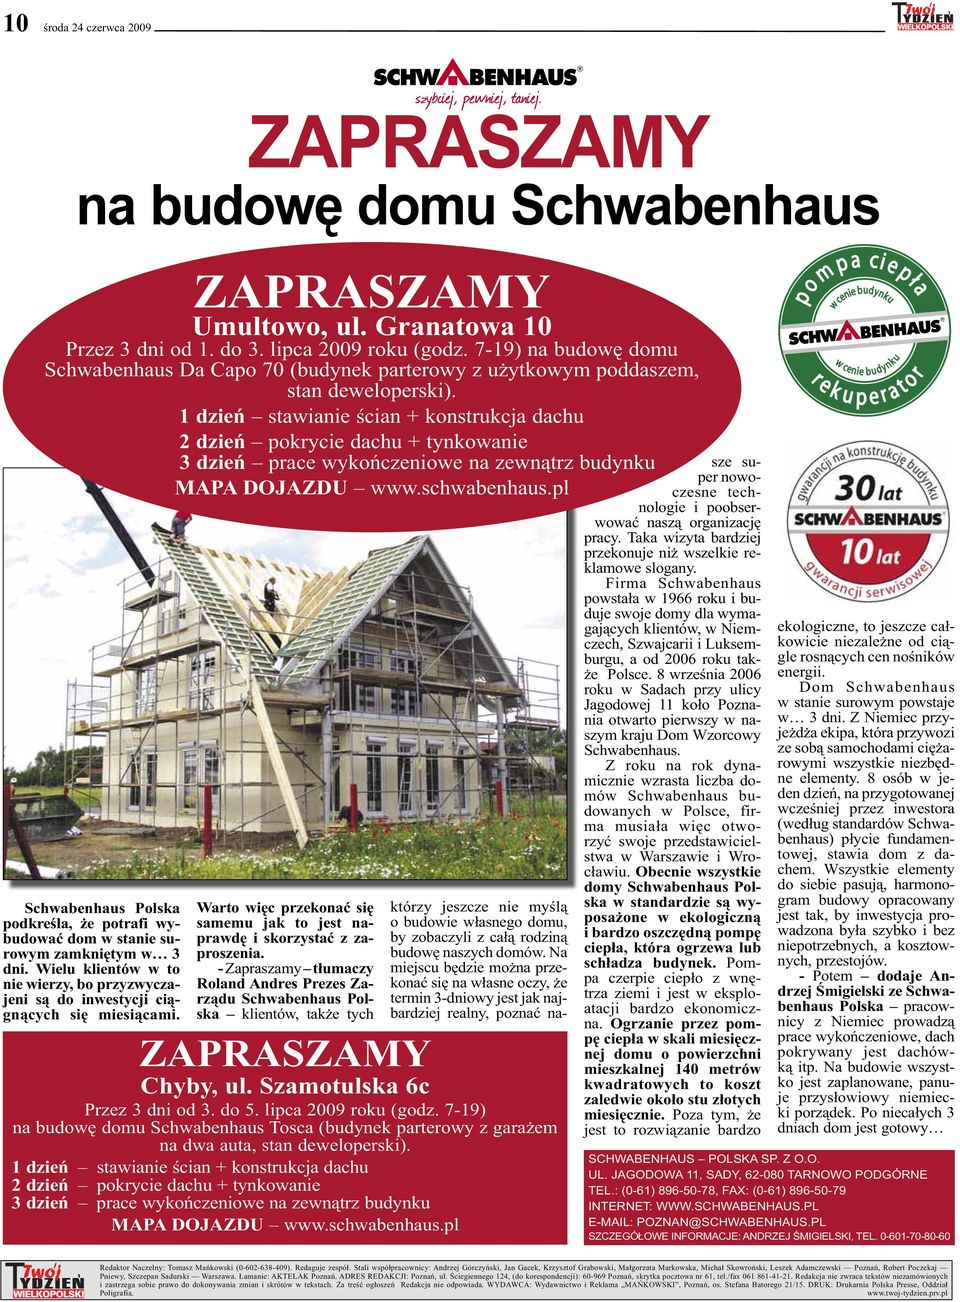 1 dzień stawianie ścian + konstrukcja dachu 2 dzień pokrycie dachu + tynkowanie Schwabenhaus Polska podkreśla, że potrafi wybudować dom w stanie surowym zamkniętym w 3 dni.